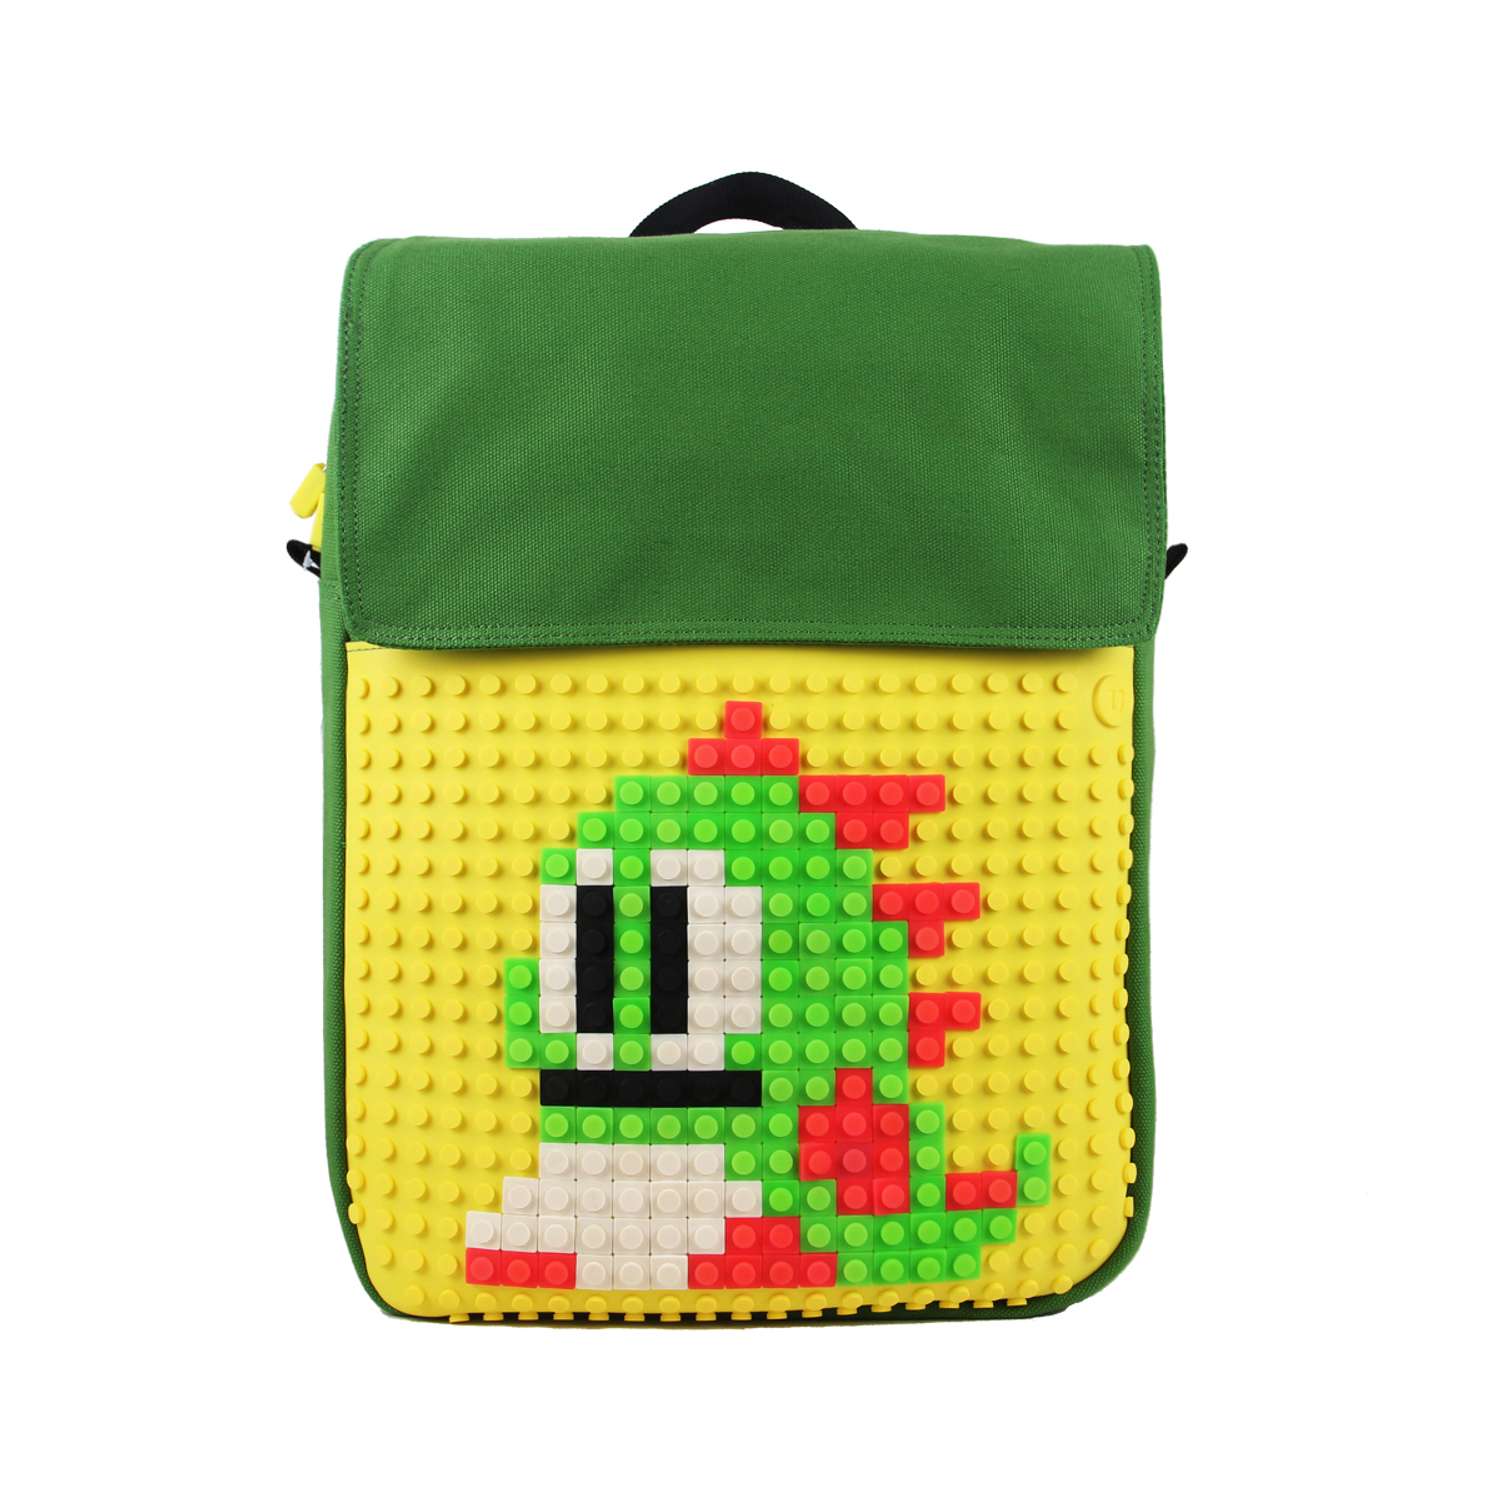 Пиксельный рюкзак Upixel зеленый-желтый - фото 1